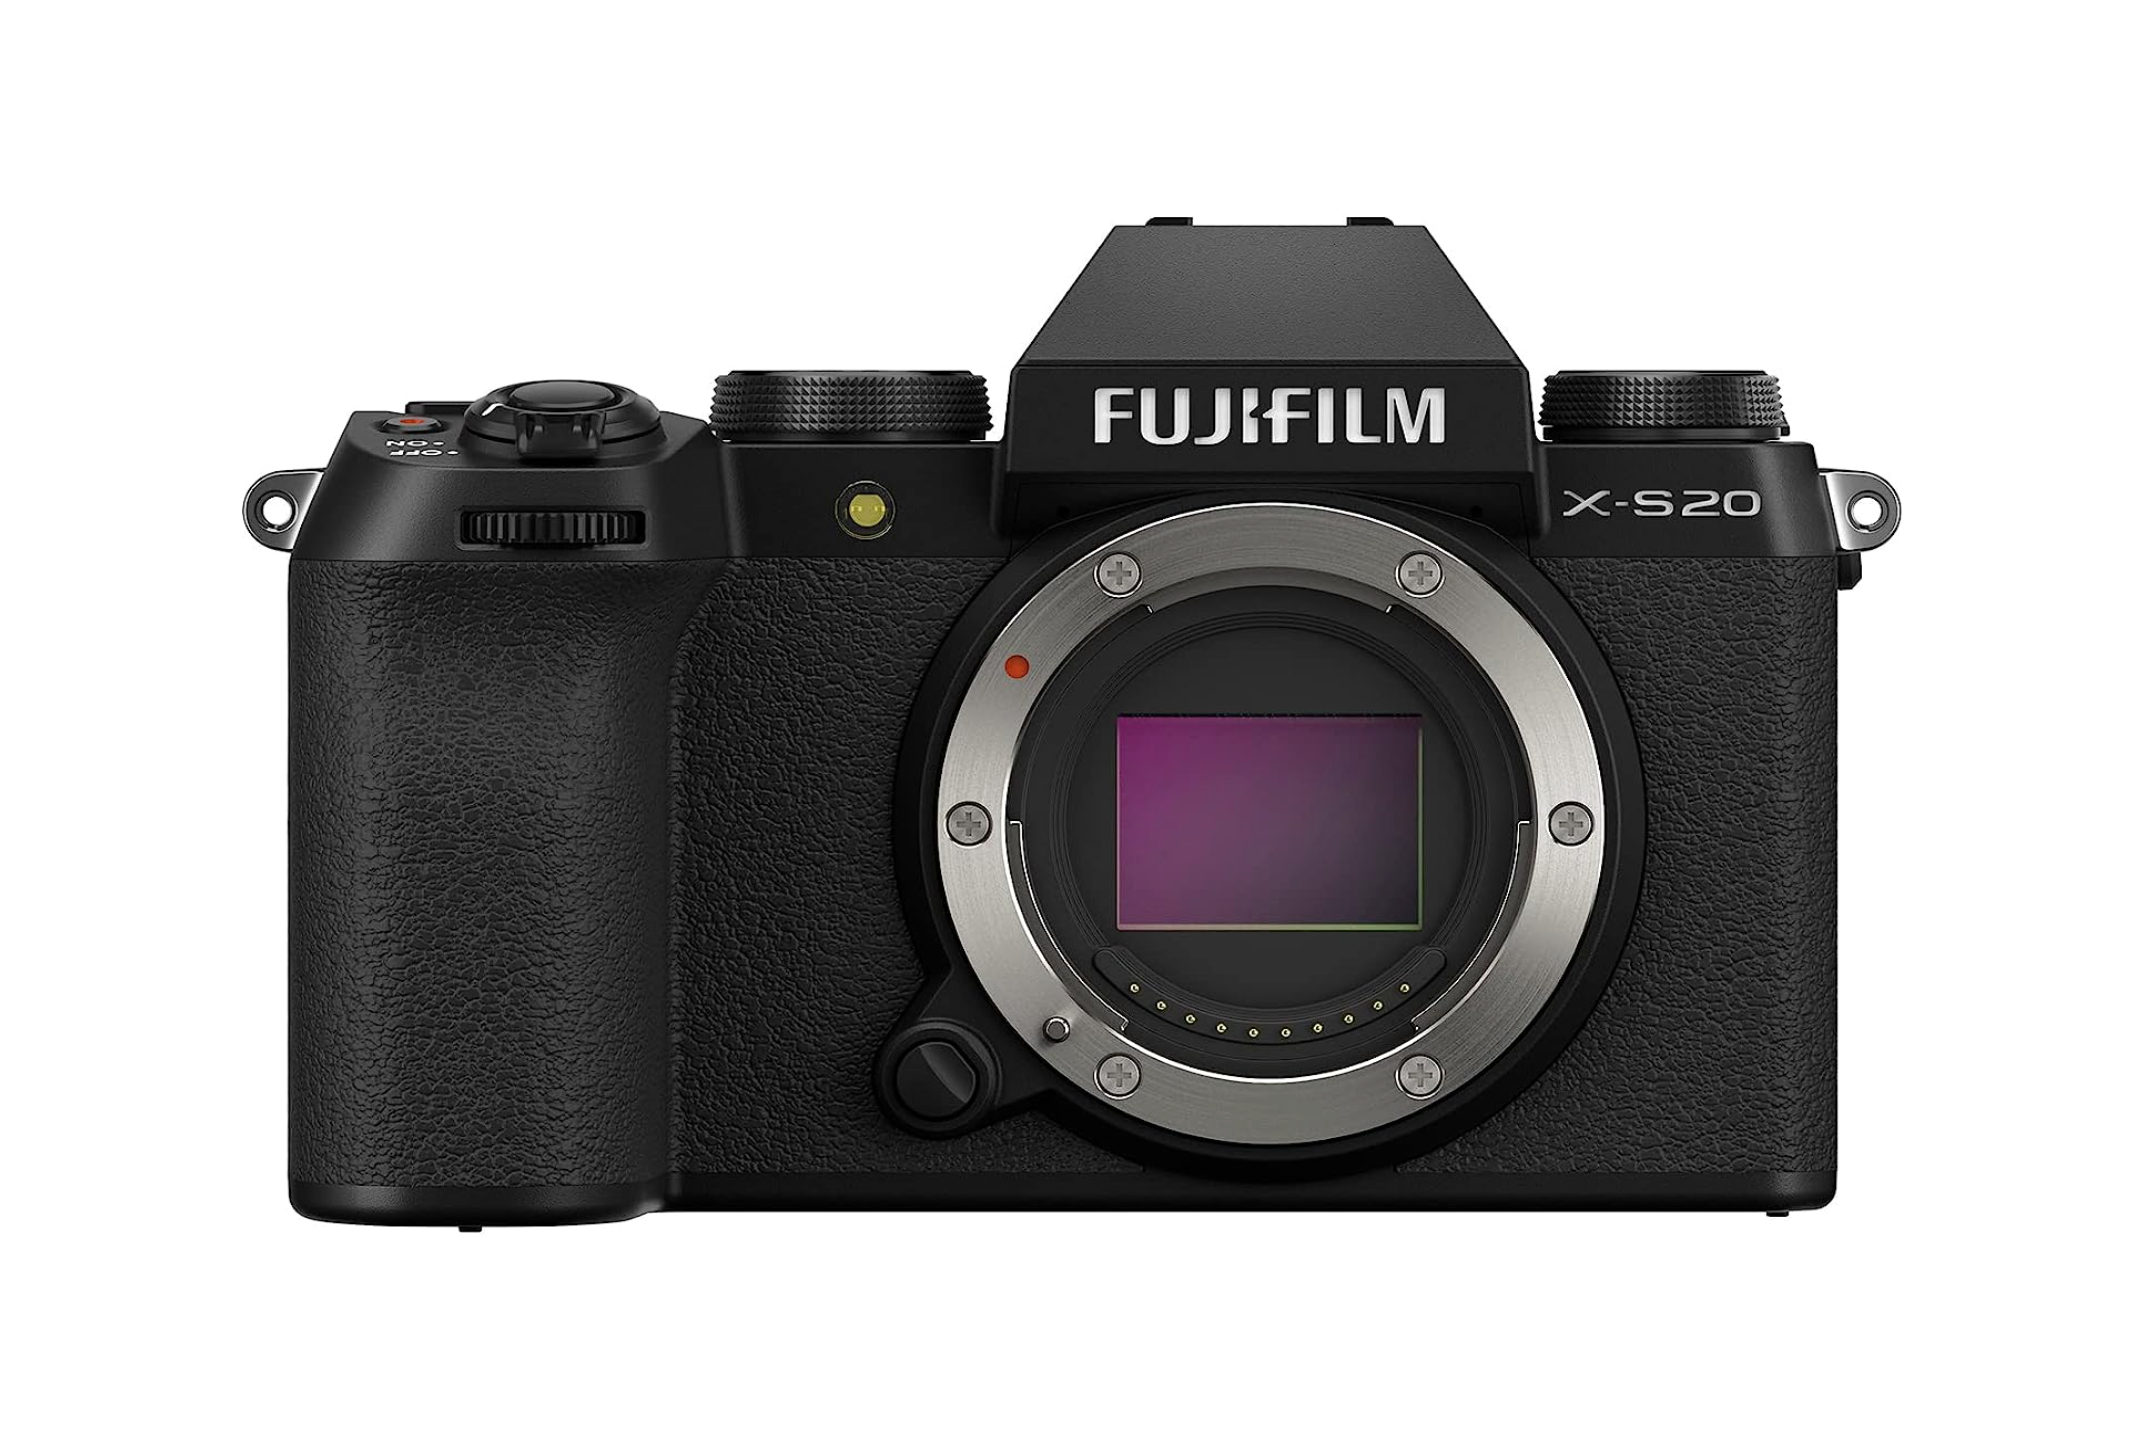 A Fujifilm X-S20 camera body